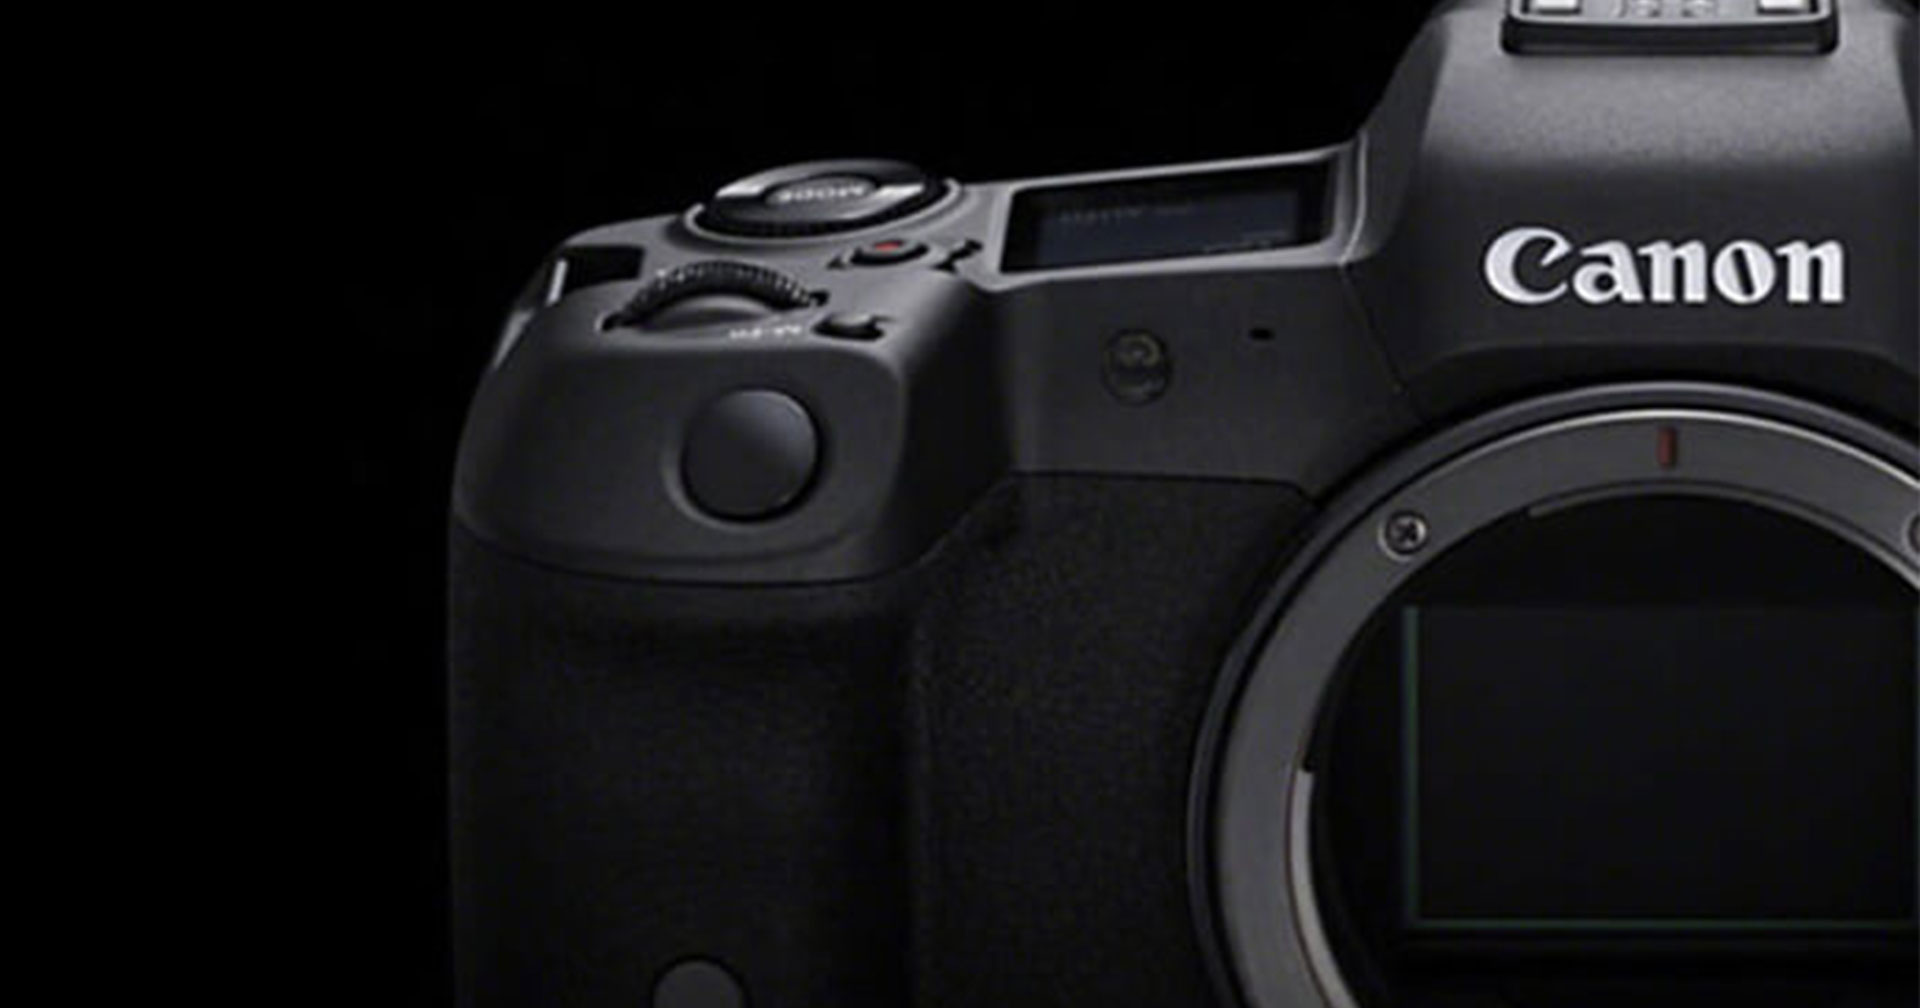 ข่าวลือ Canon เตรียมเปิดตัวกล้องซีรีส์ EOS R ความละเอียด 100 ล้านพิกเซล ในปีหน้า